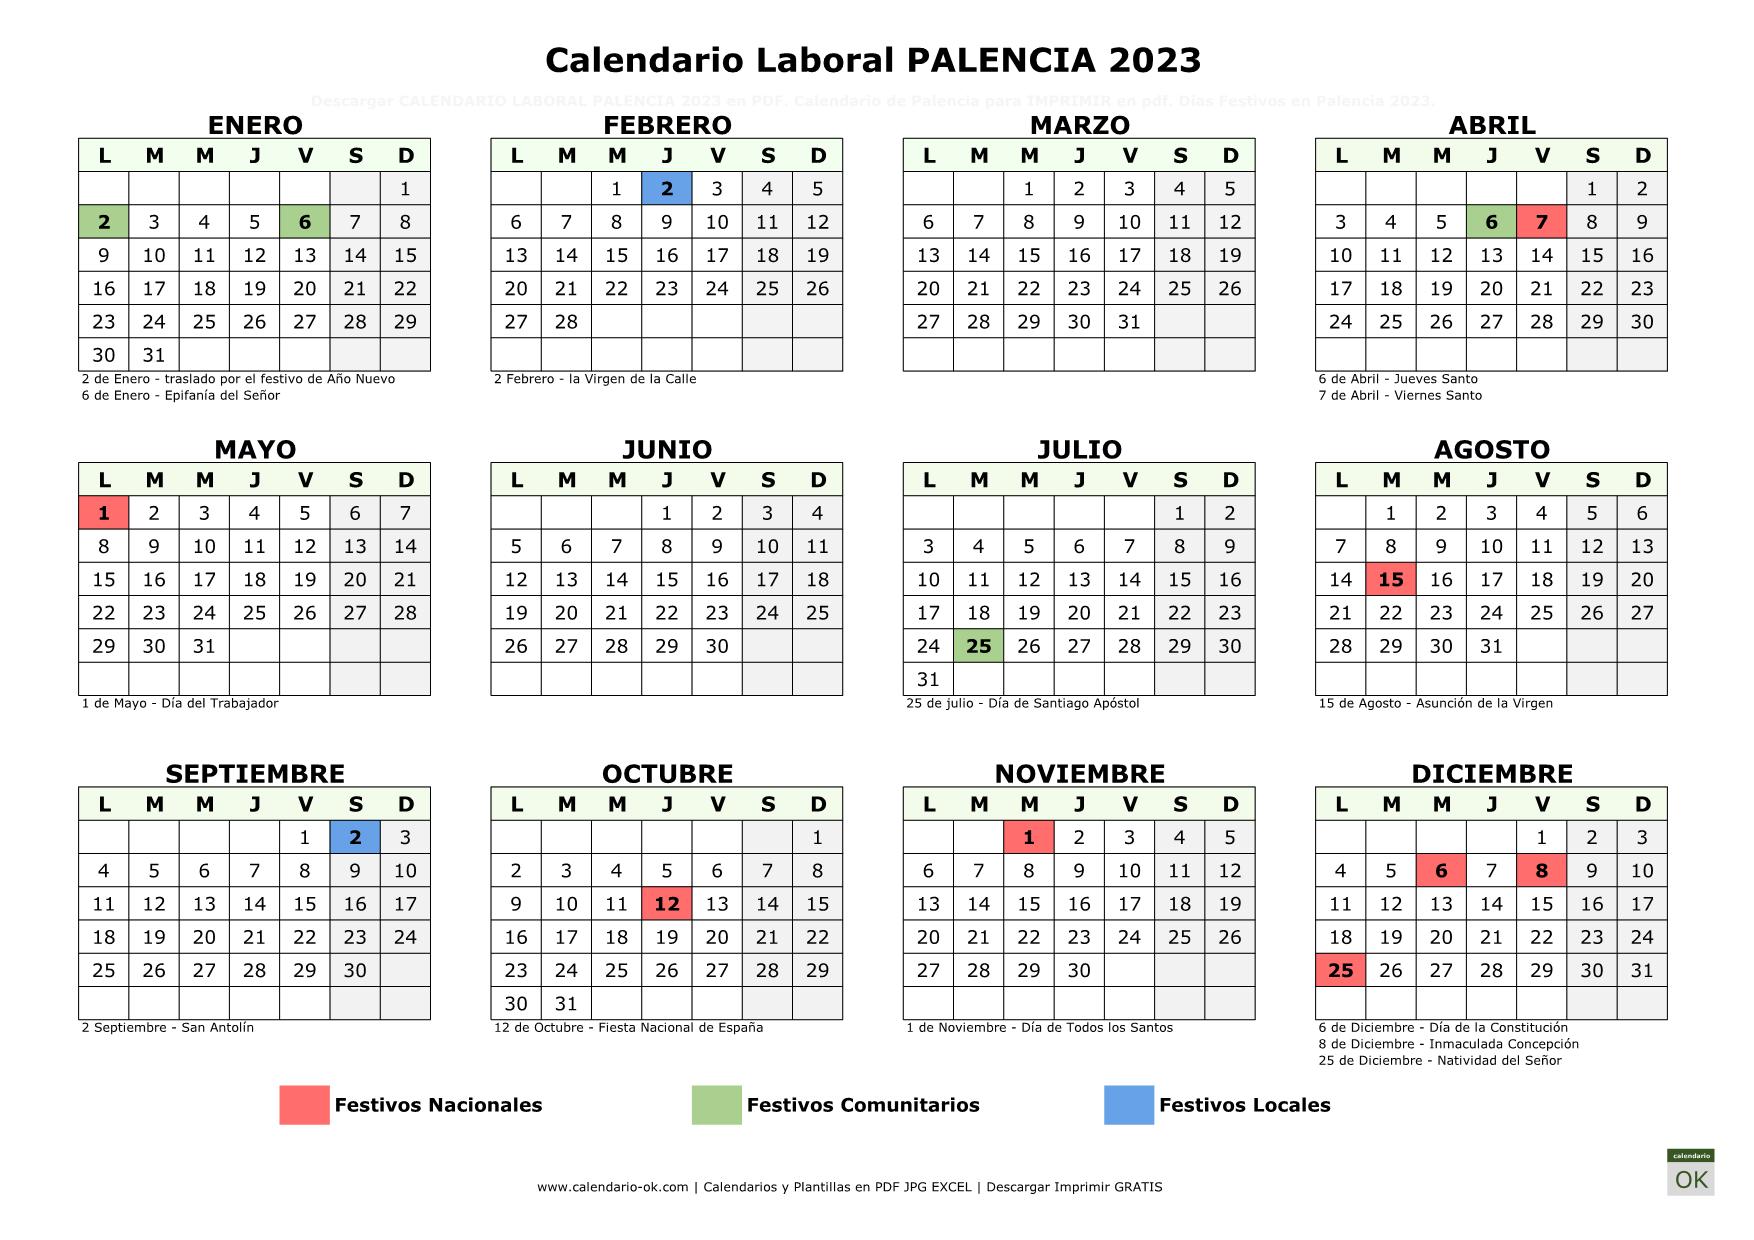 Calendario Laboral Palencia 2023 horizontal